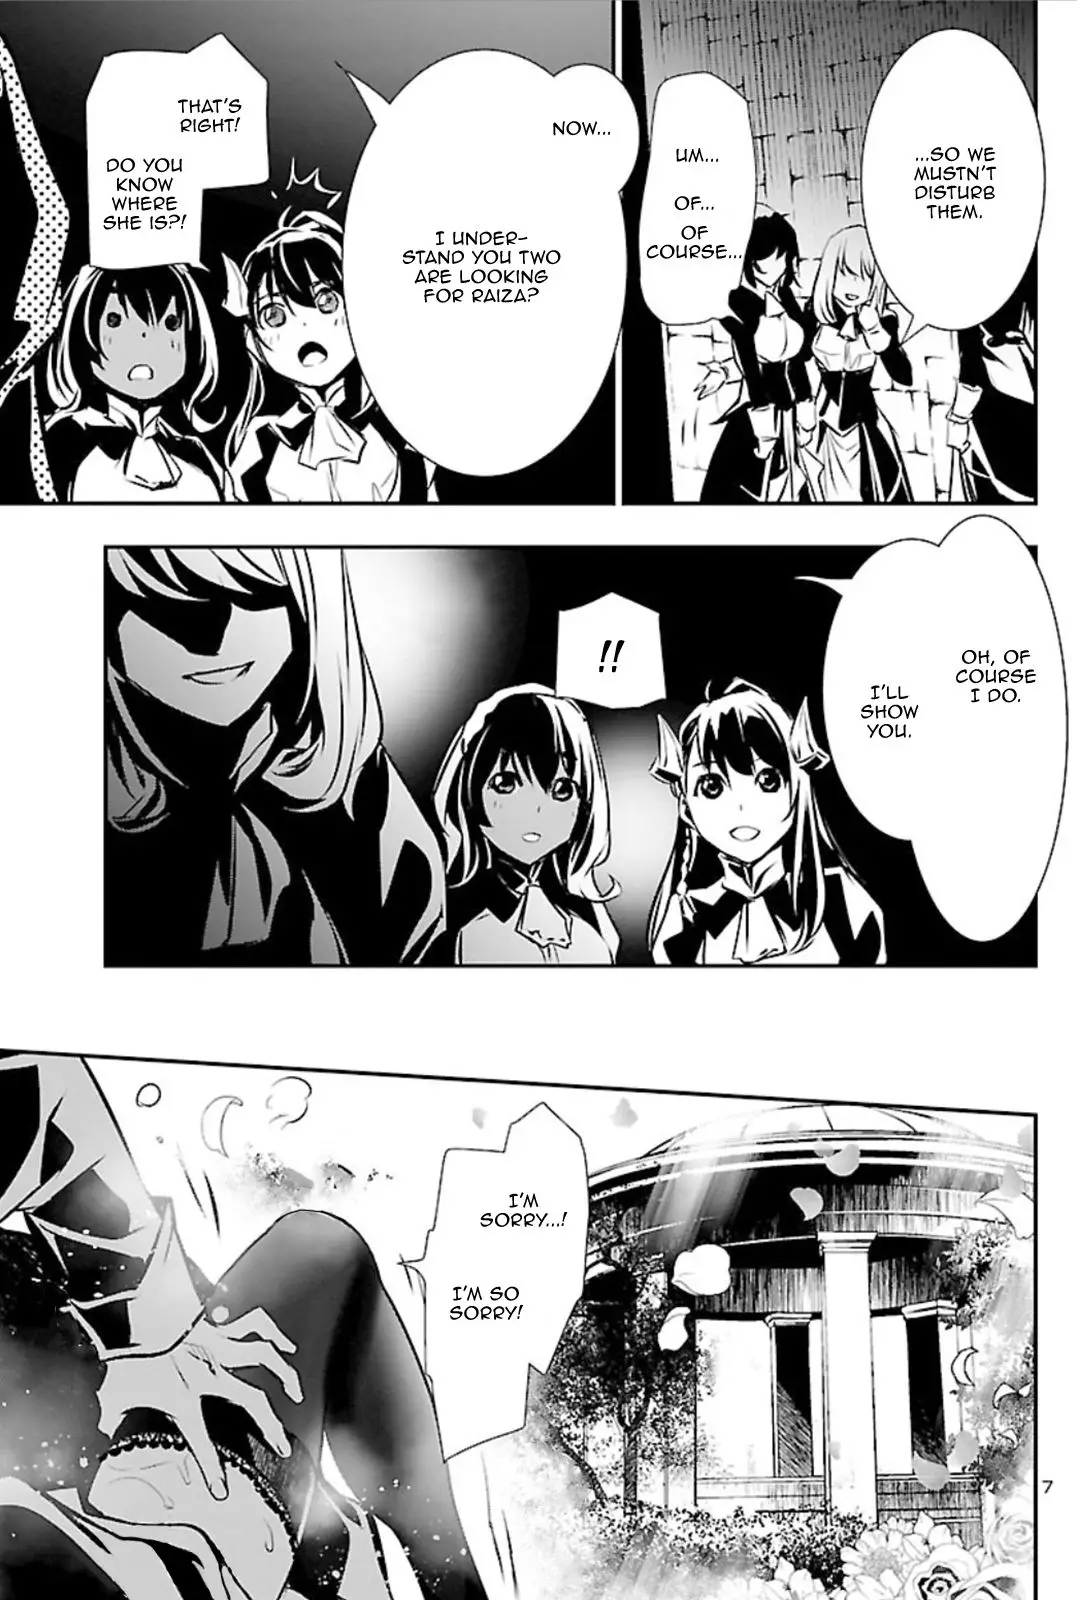 Shinju no Nectar - 41 page 6